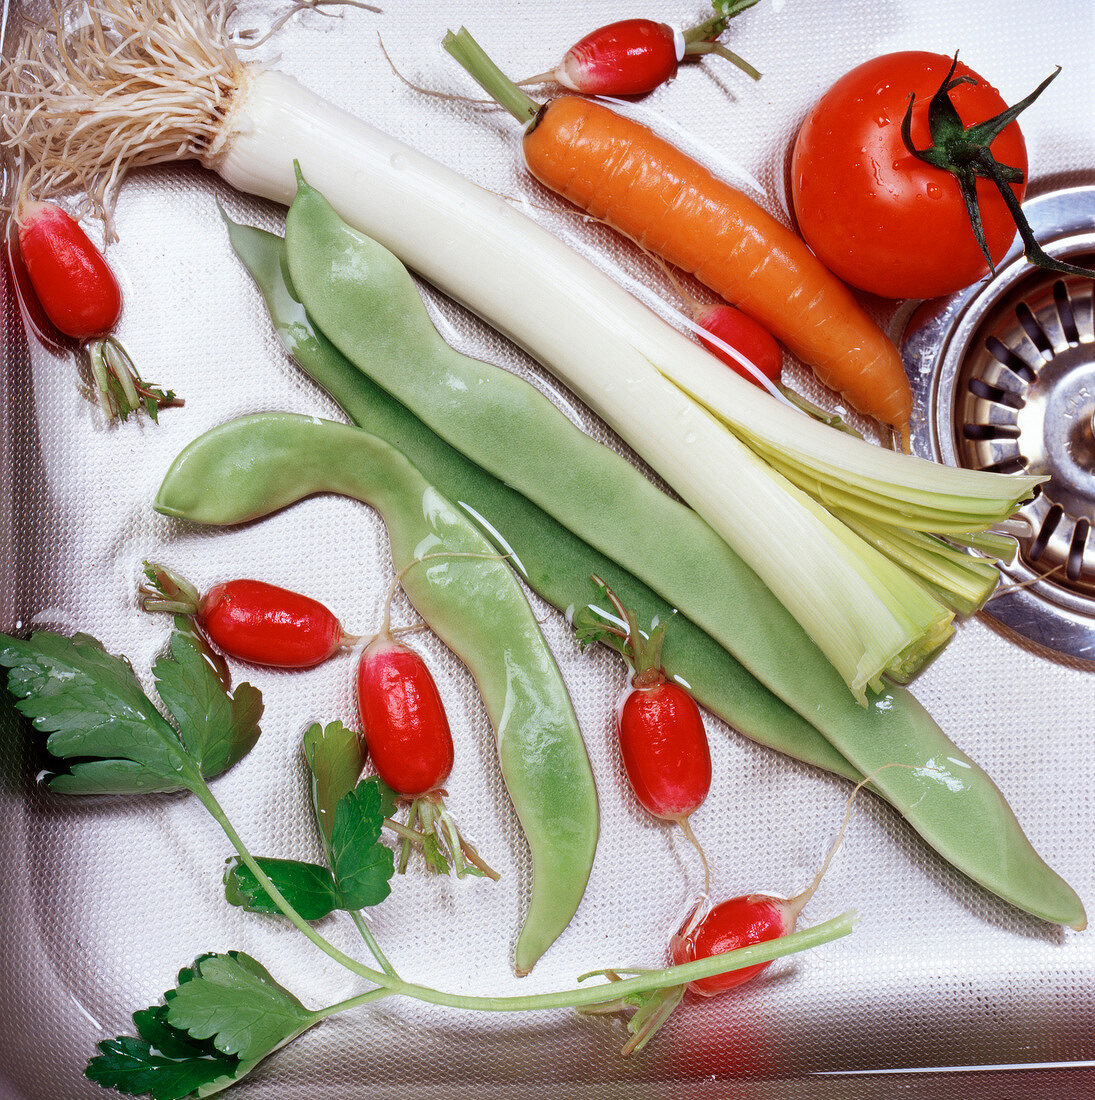 Fresh vegetables in sink